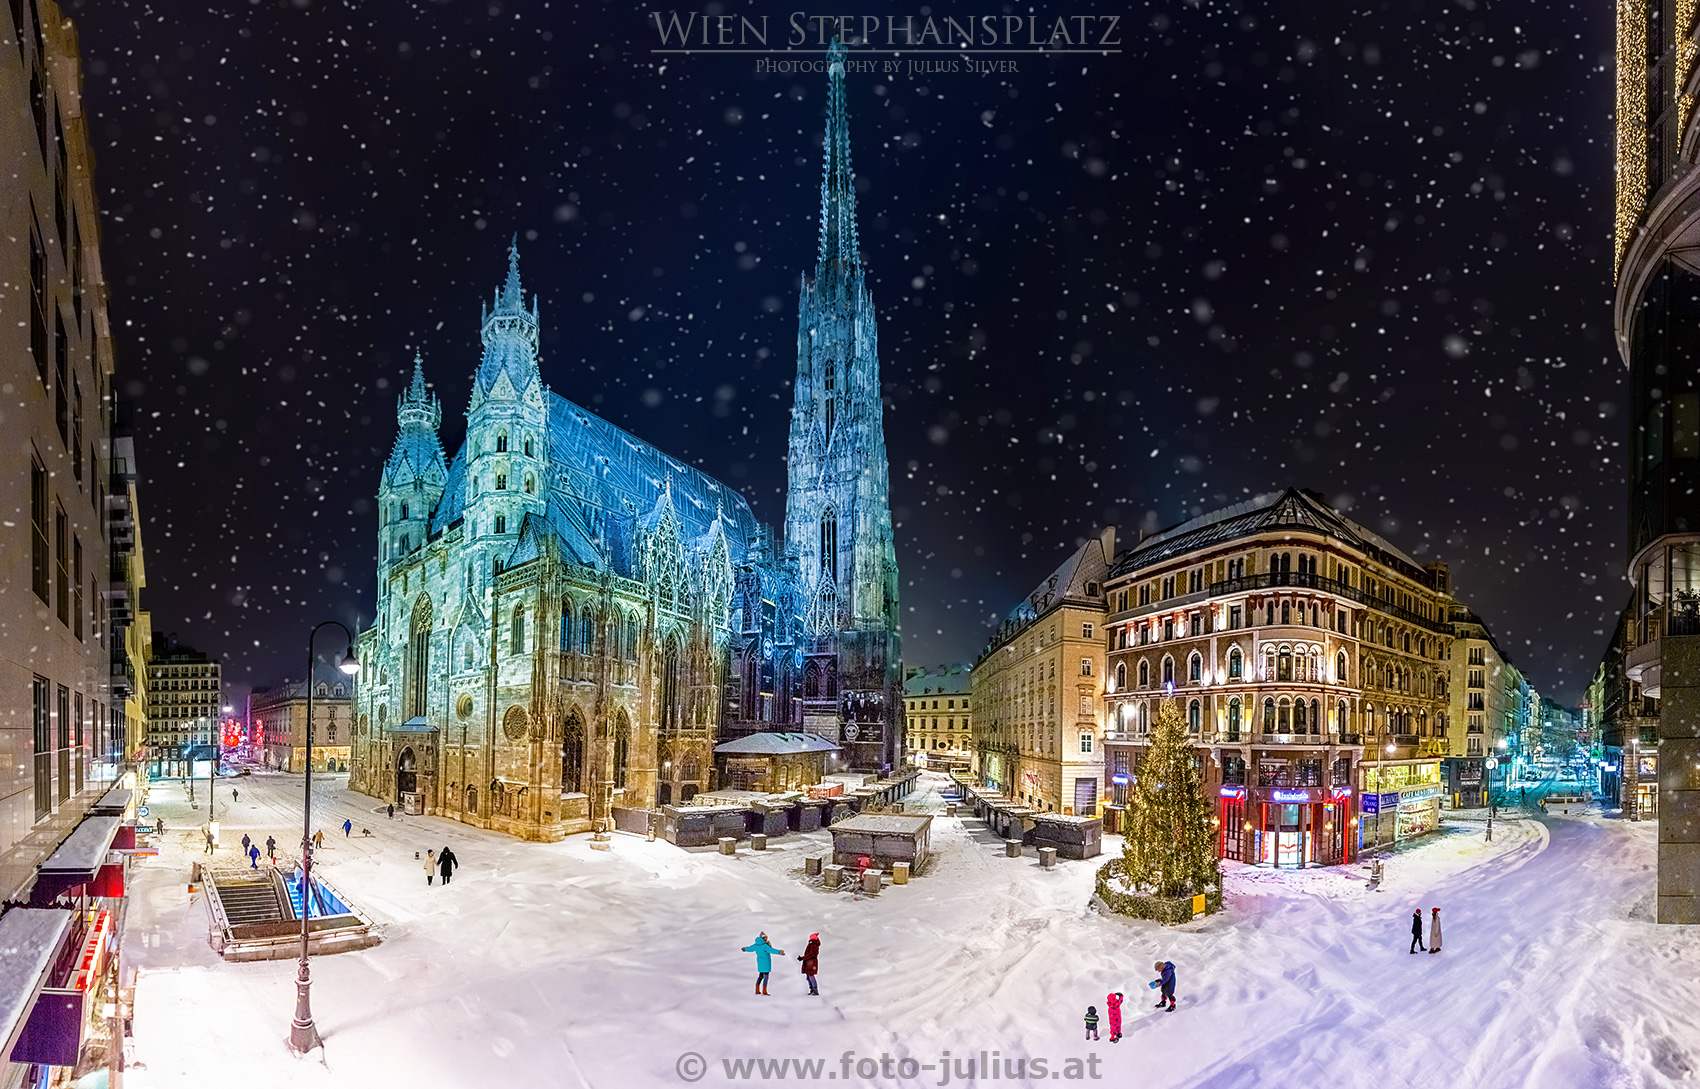 W6942a_Wien_Stephansplatz_Winter.jpg, 829kB